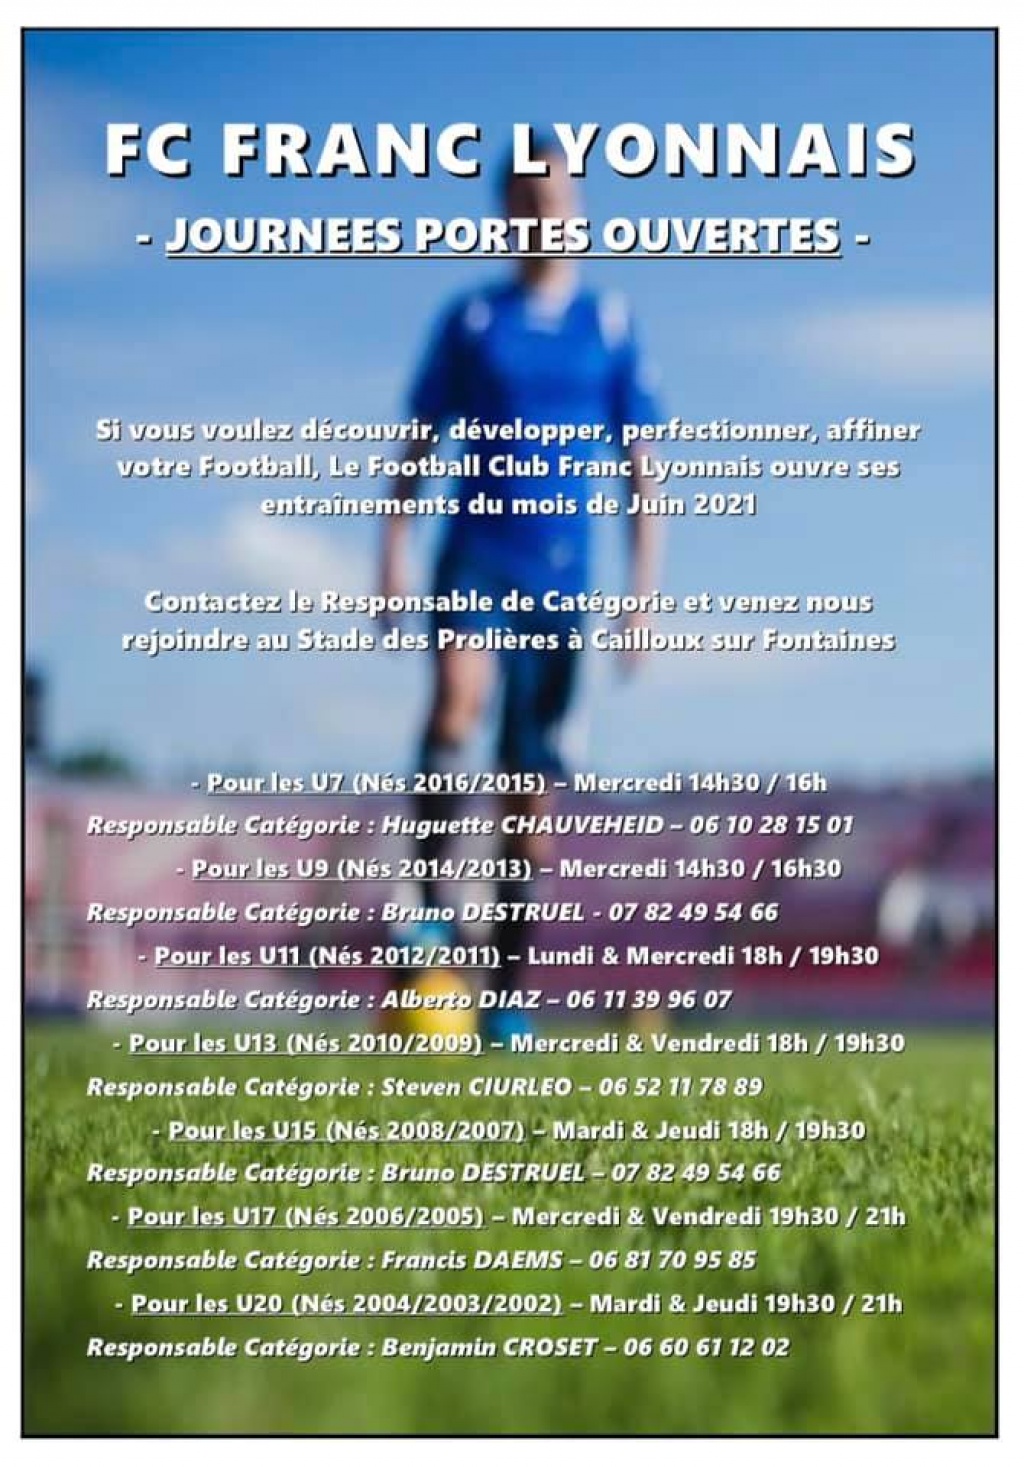 Journées Portes Ouvertes - FC Franc Lyonnais